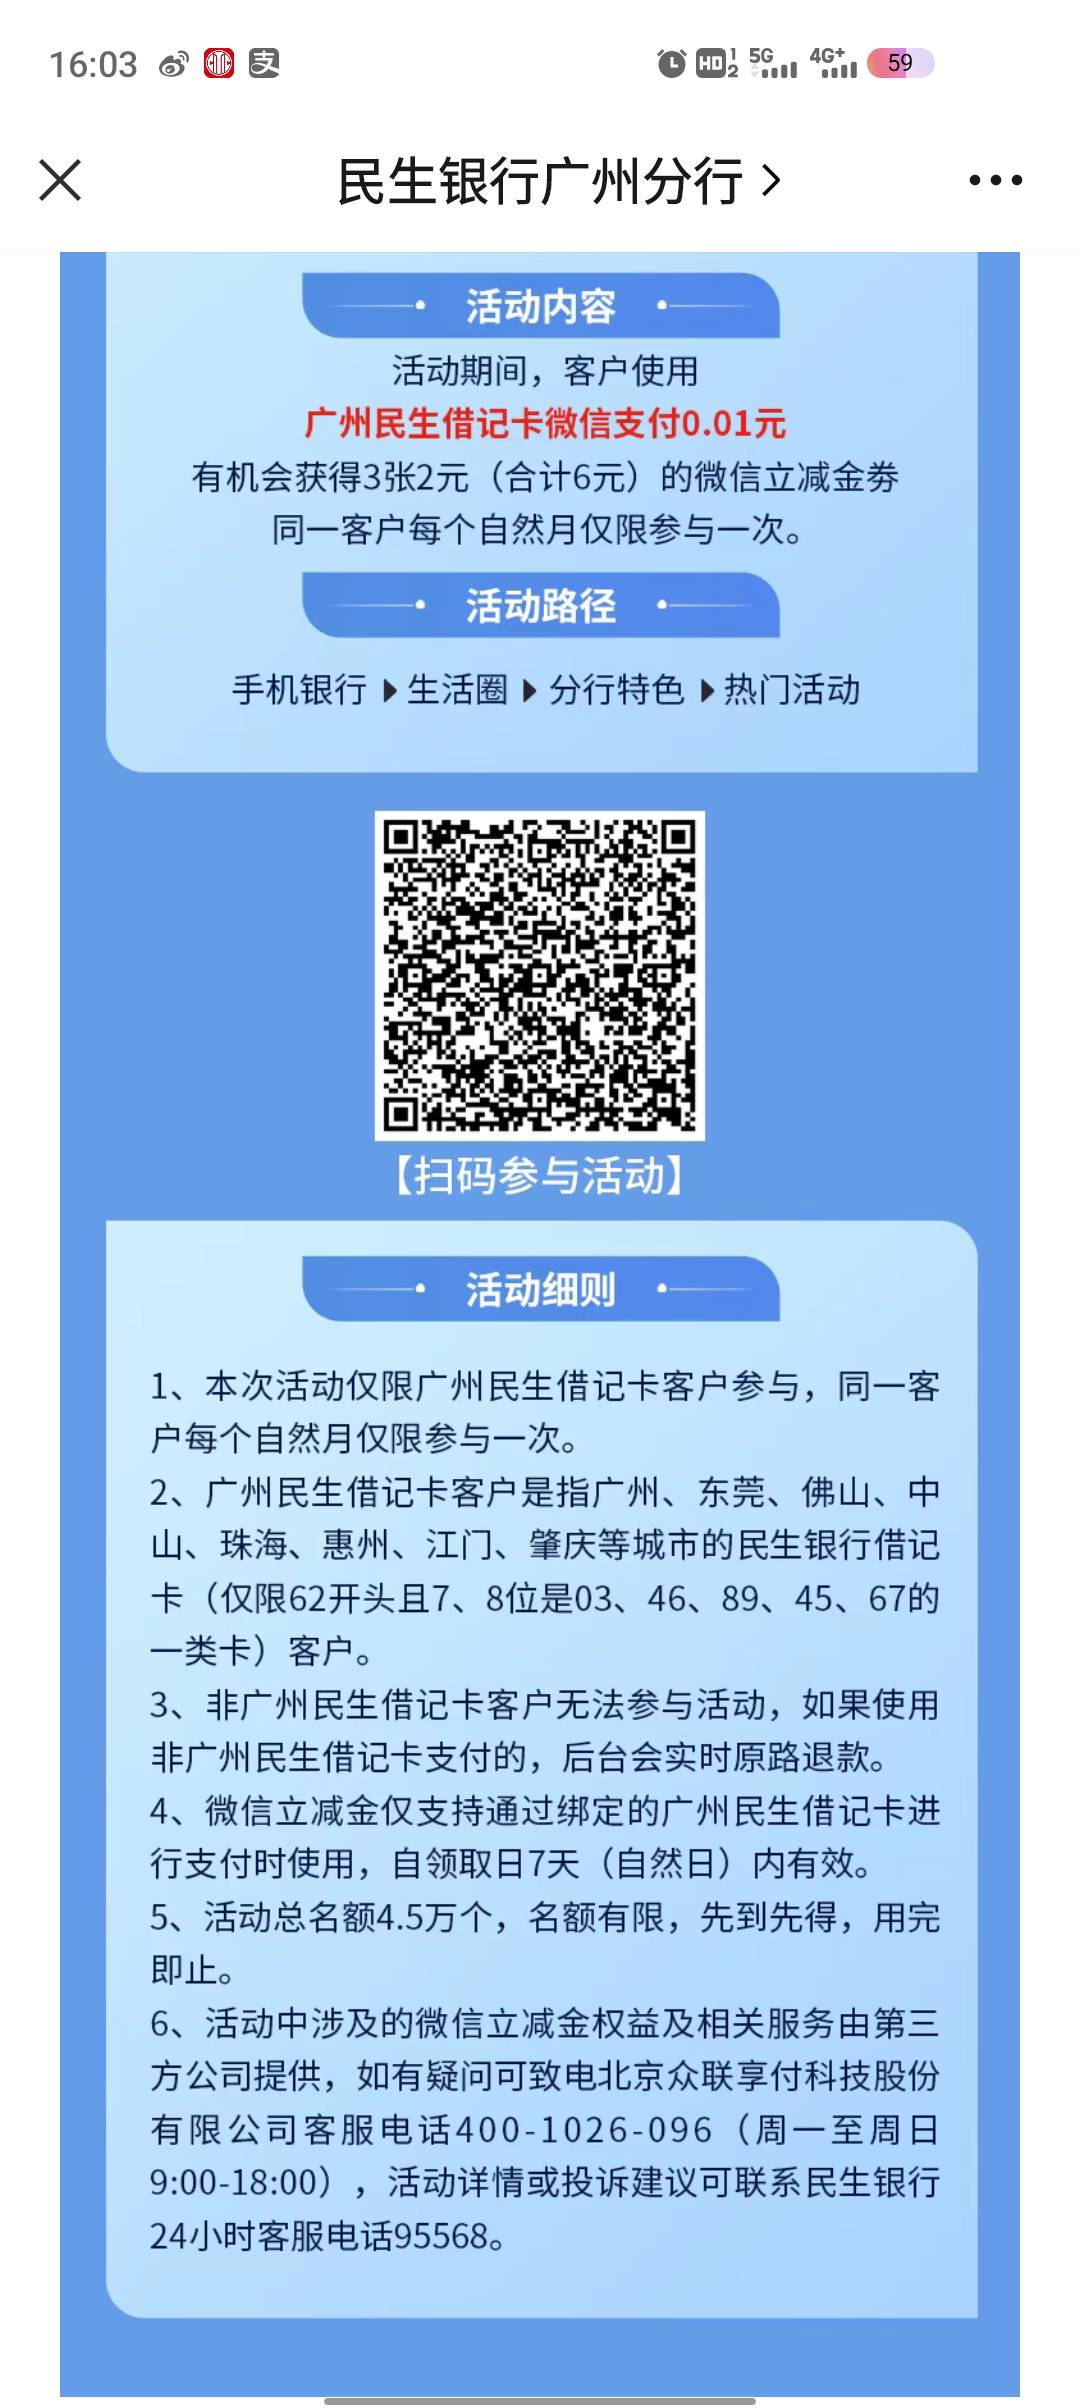 [福利在线]民生广州分行公众号推文支付有礼月月畅享活动